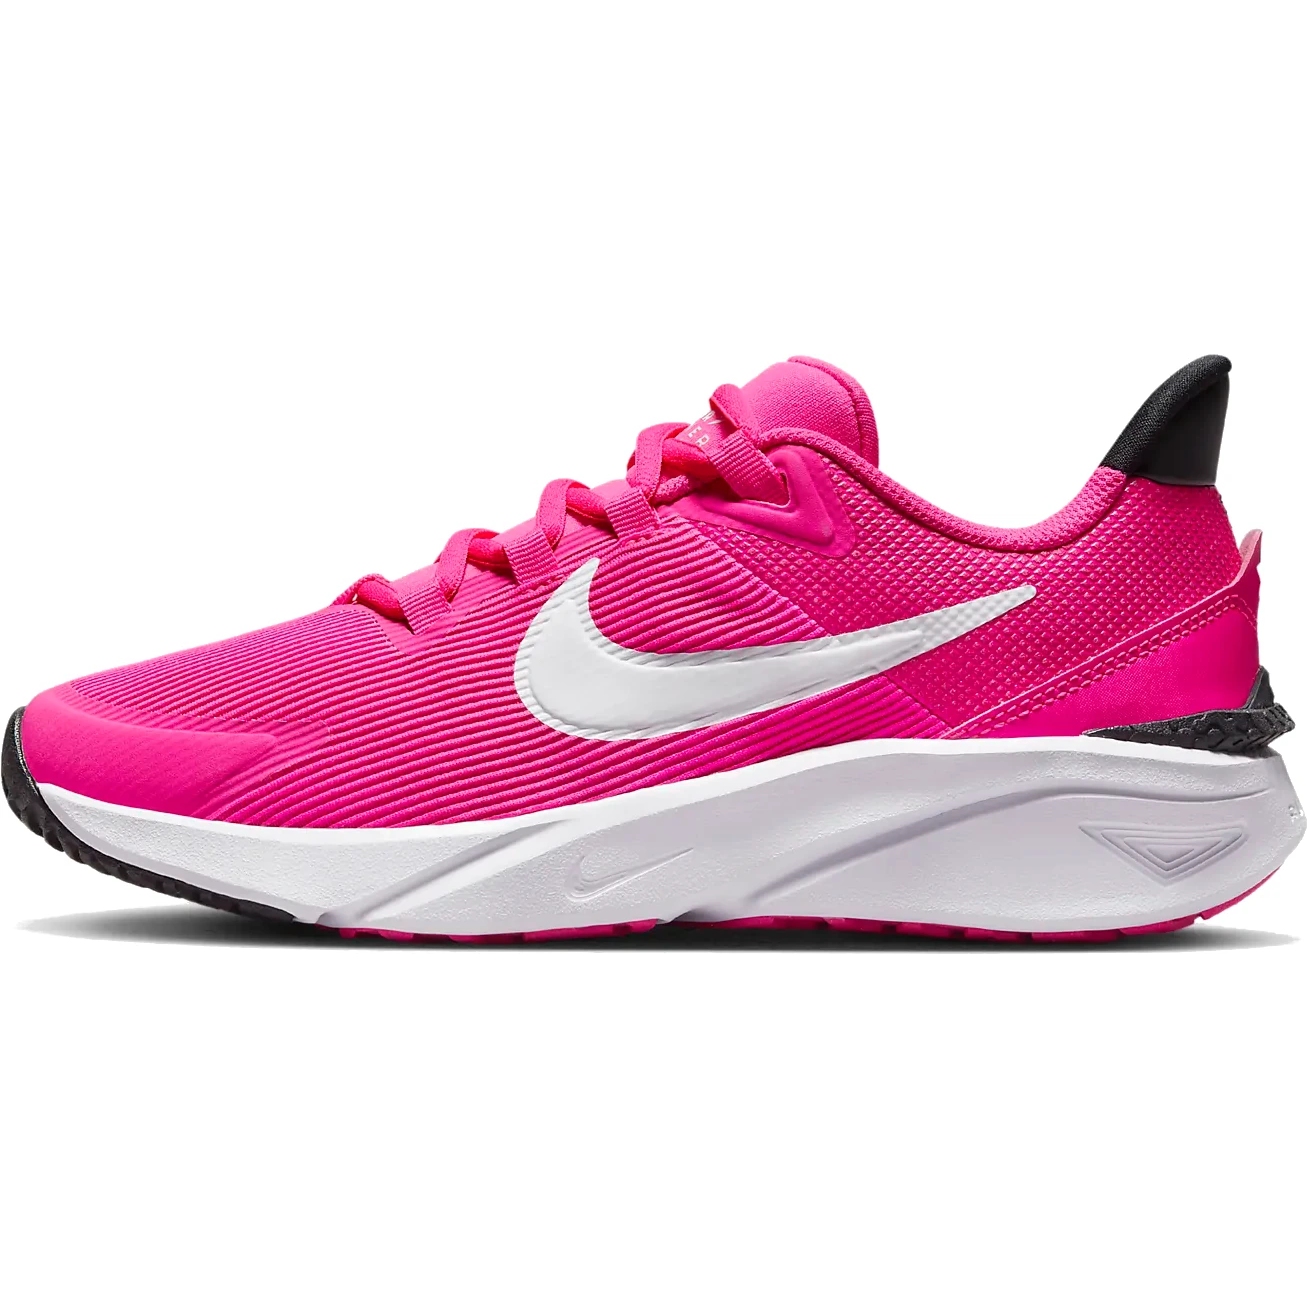 Produktbild von Nike Star Runner 4 Schuhe für Kinder - fierce pink/black-white DX7615-601